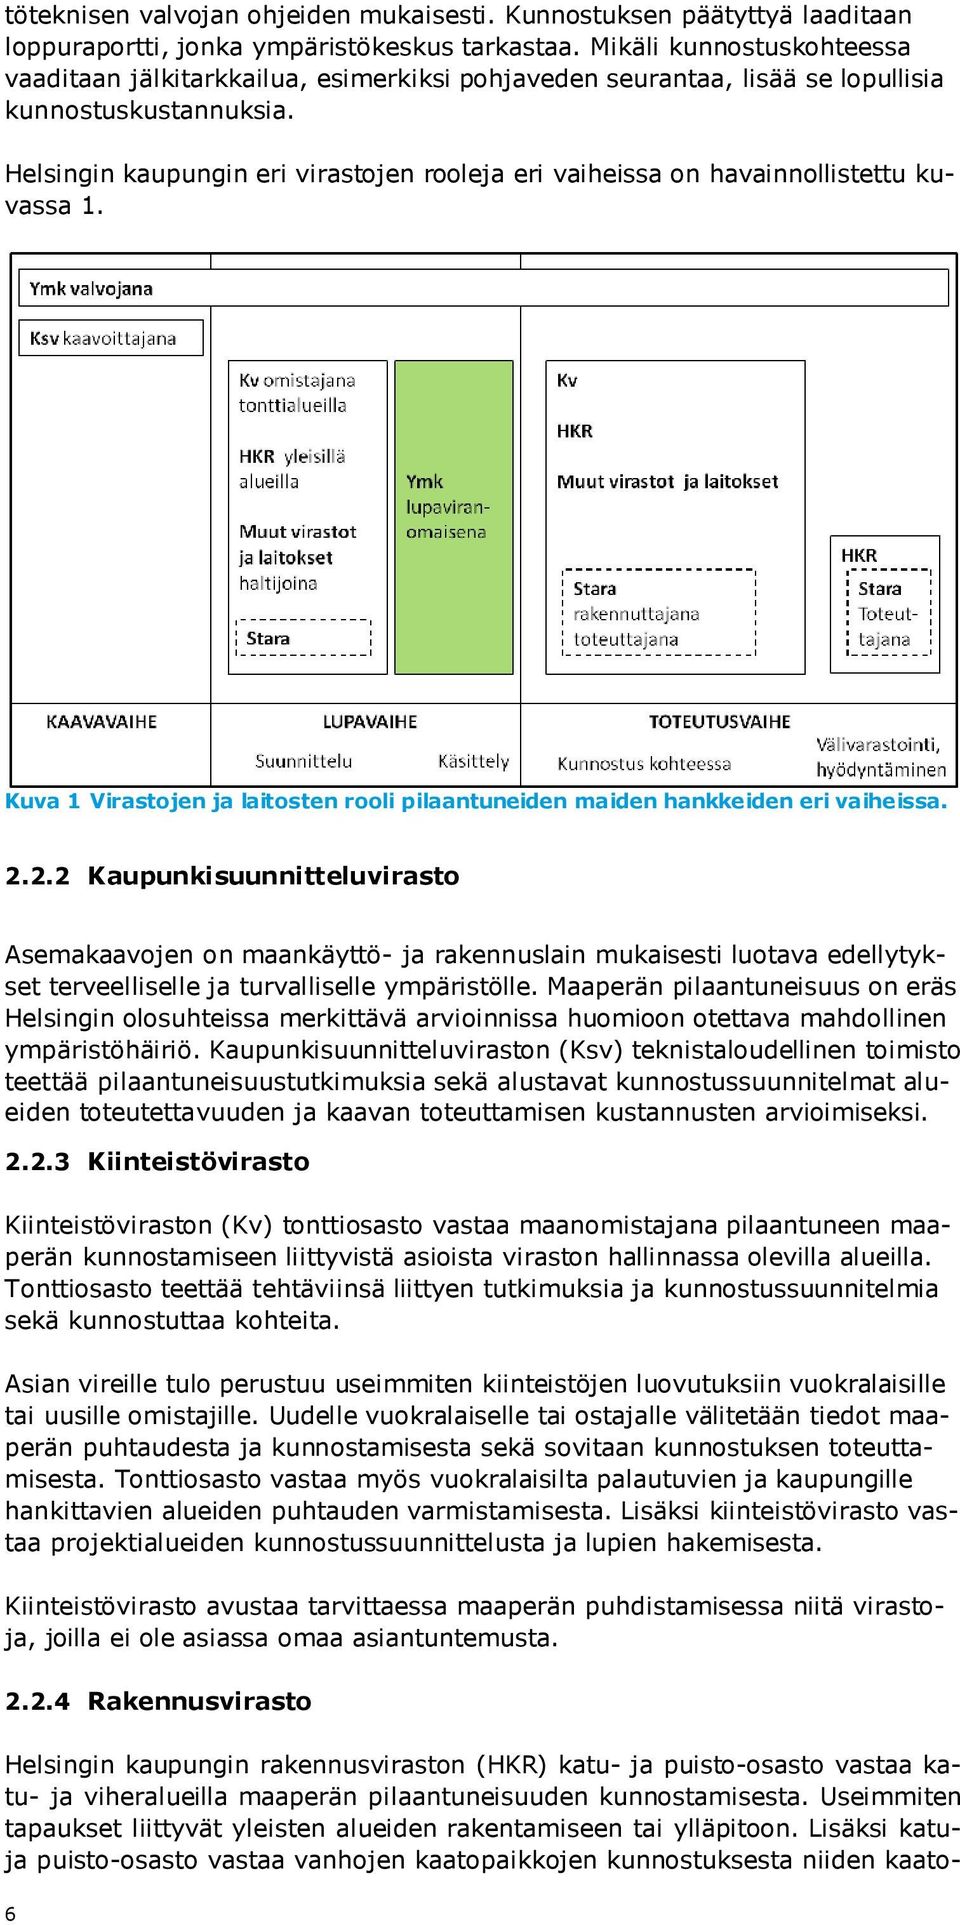 Helsingin kaupungin eri virastojen rooleja eri vaiheissa on havainnollistettu kuvassa 1. Kuva 1 Virastojen ja laitosten rooli pilaantuneiden maiden hankkeiden eri vaiheissa. 2.